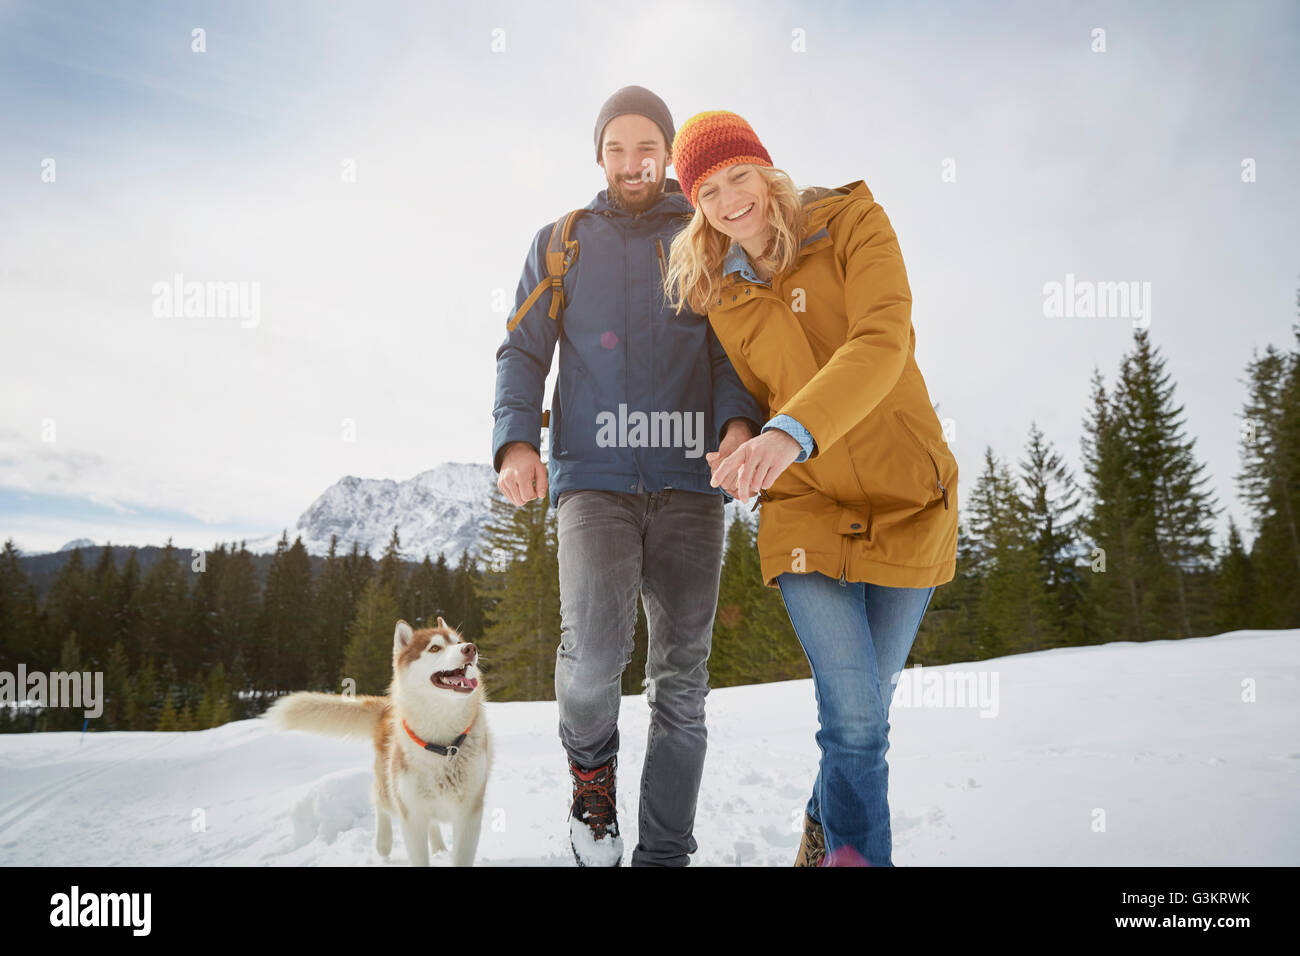 Porträt des Paares zu Fuß husky im Schnee bedeckt Landschaft, Elmau, Bayern, Deutschland Stockfoto